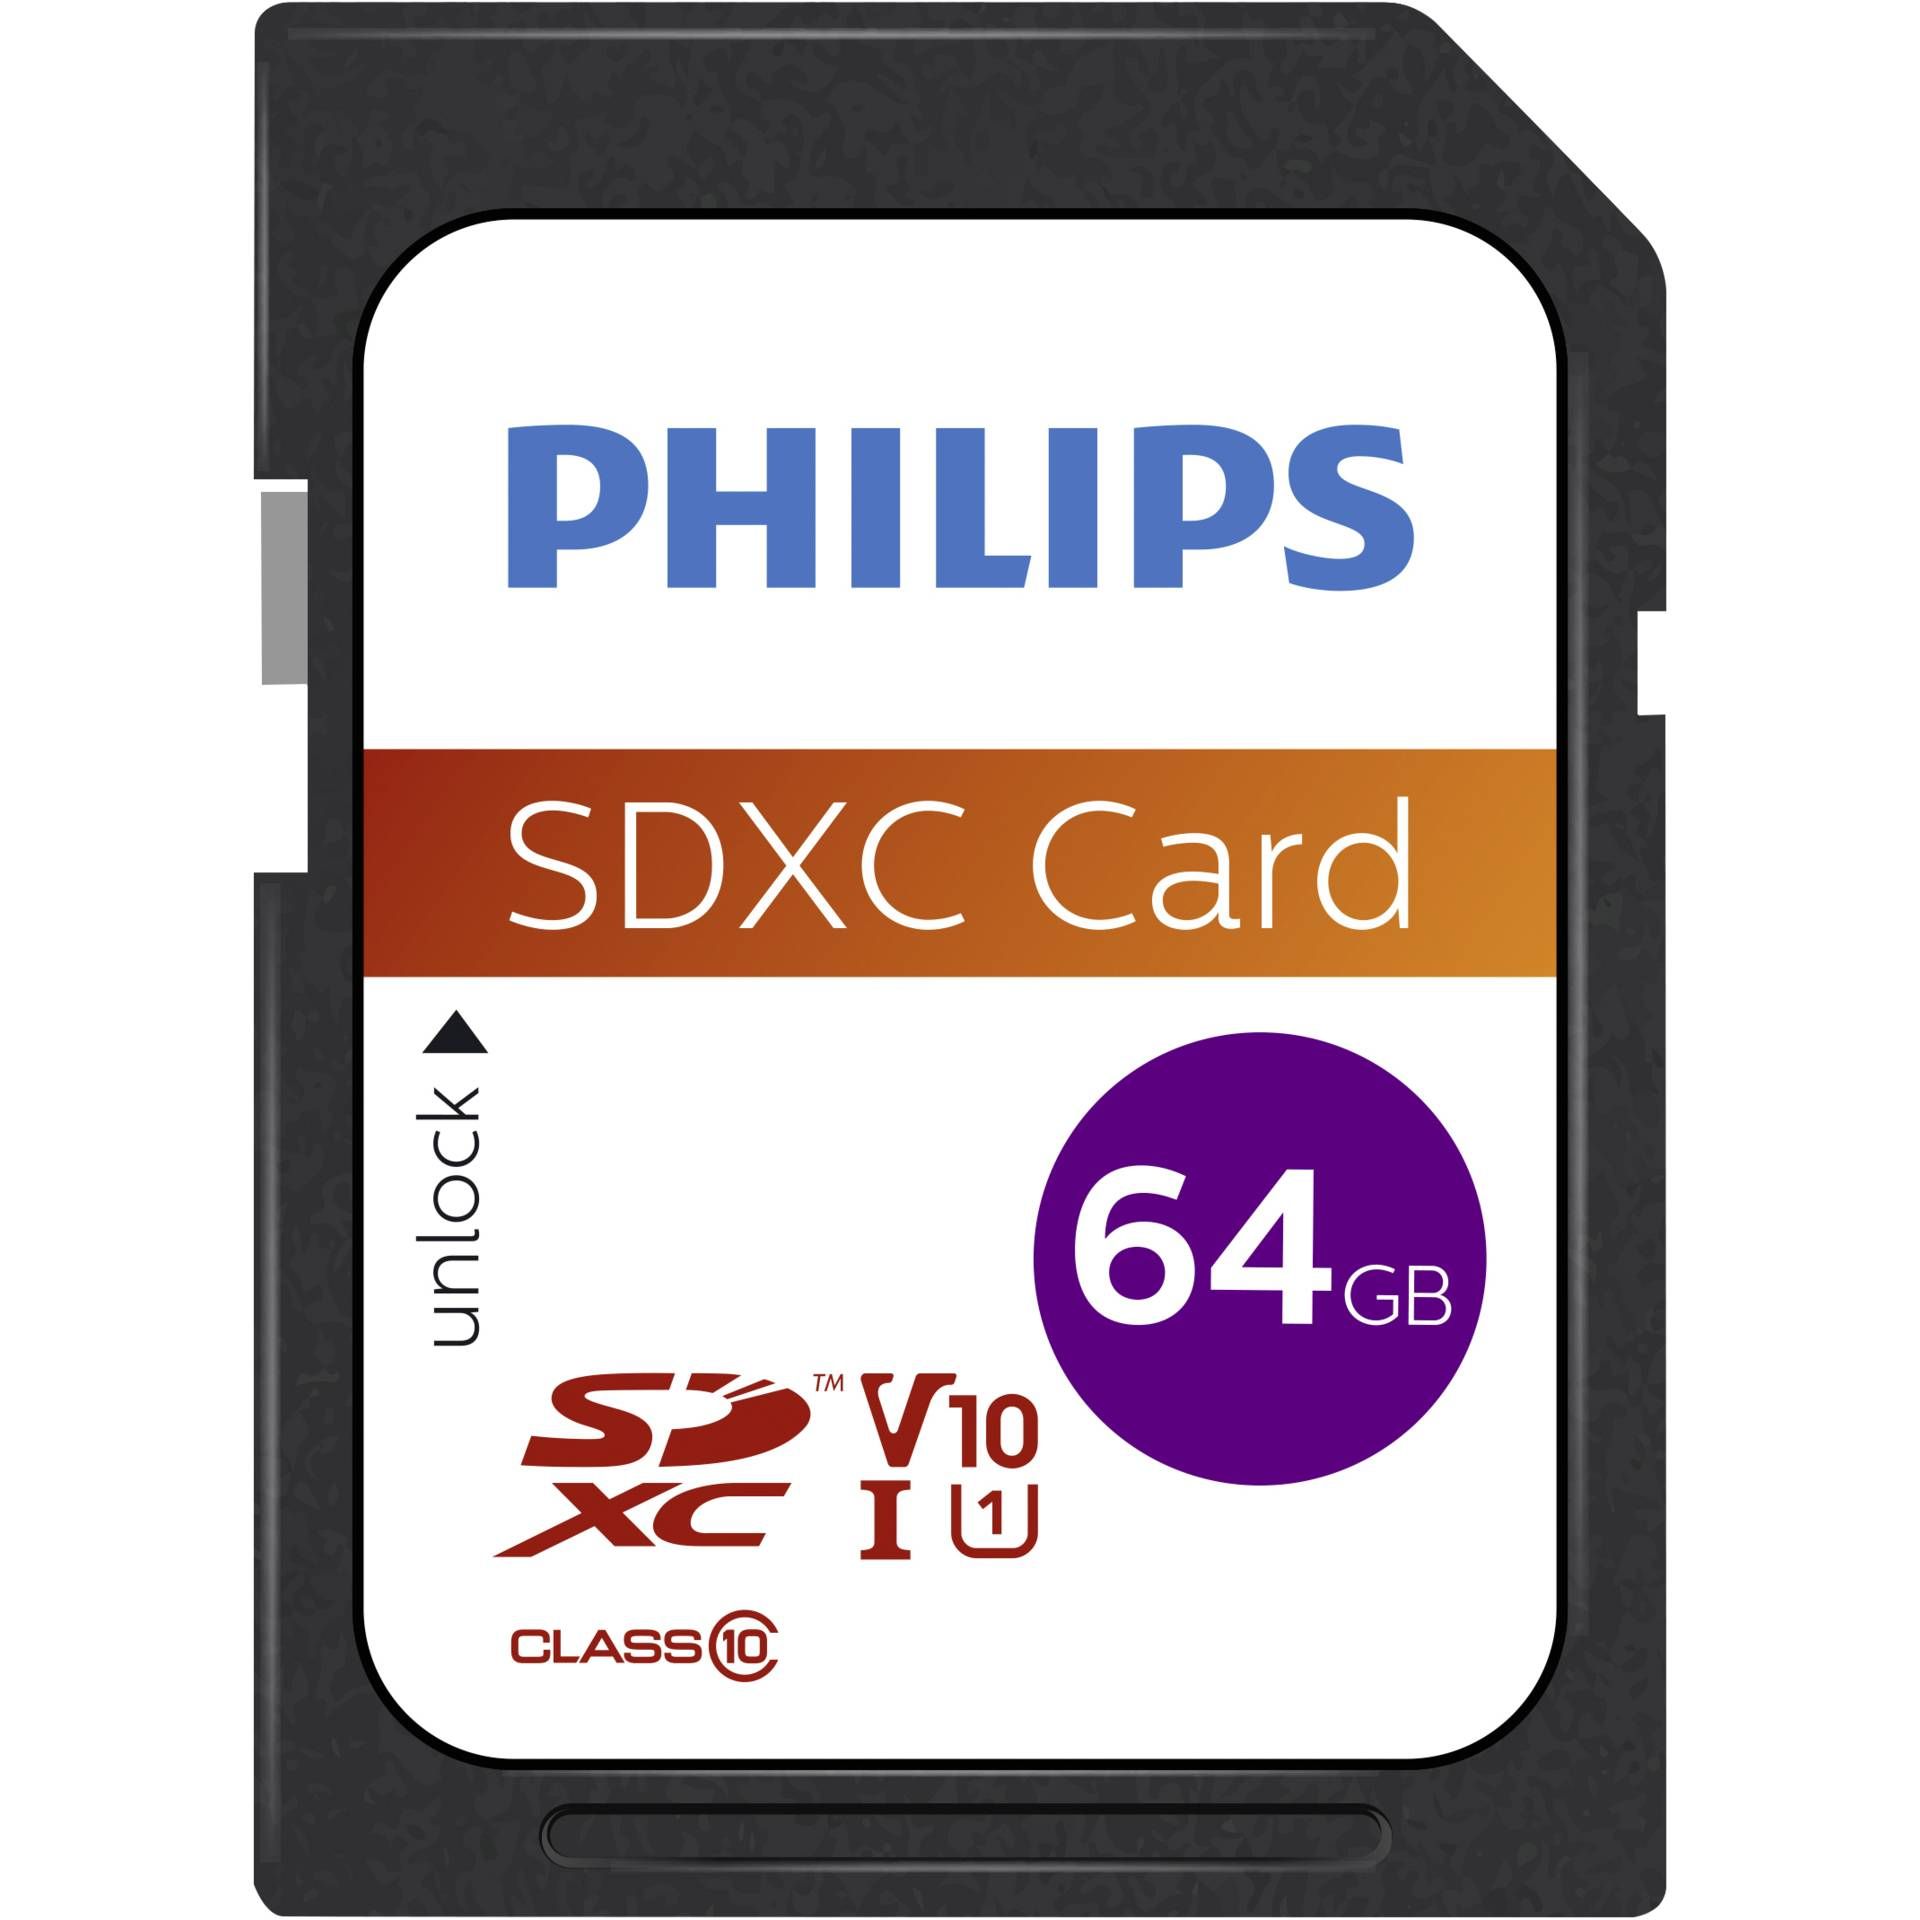 Philips SDXC Card           64GB Class 10 UHS-I U1